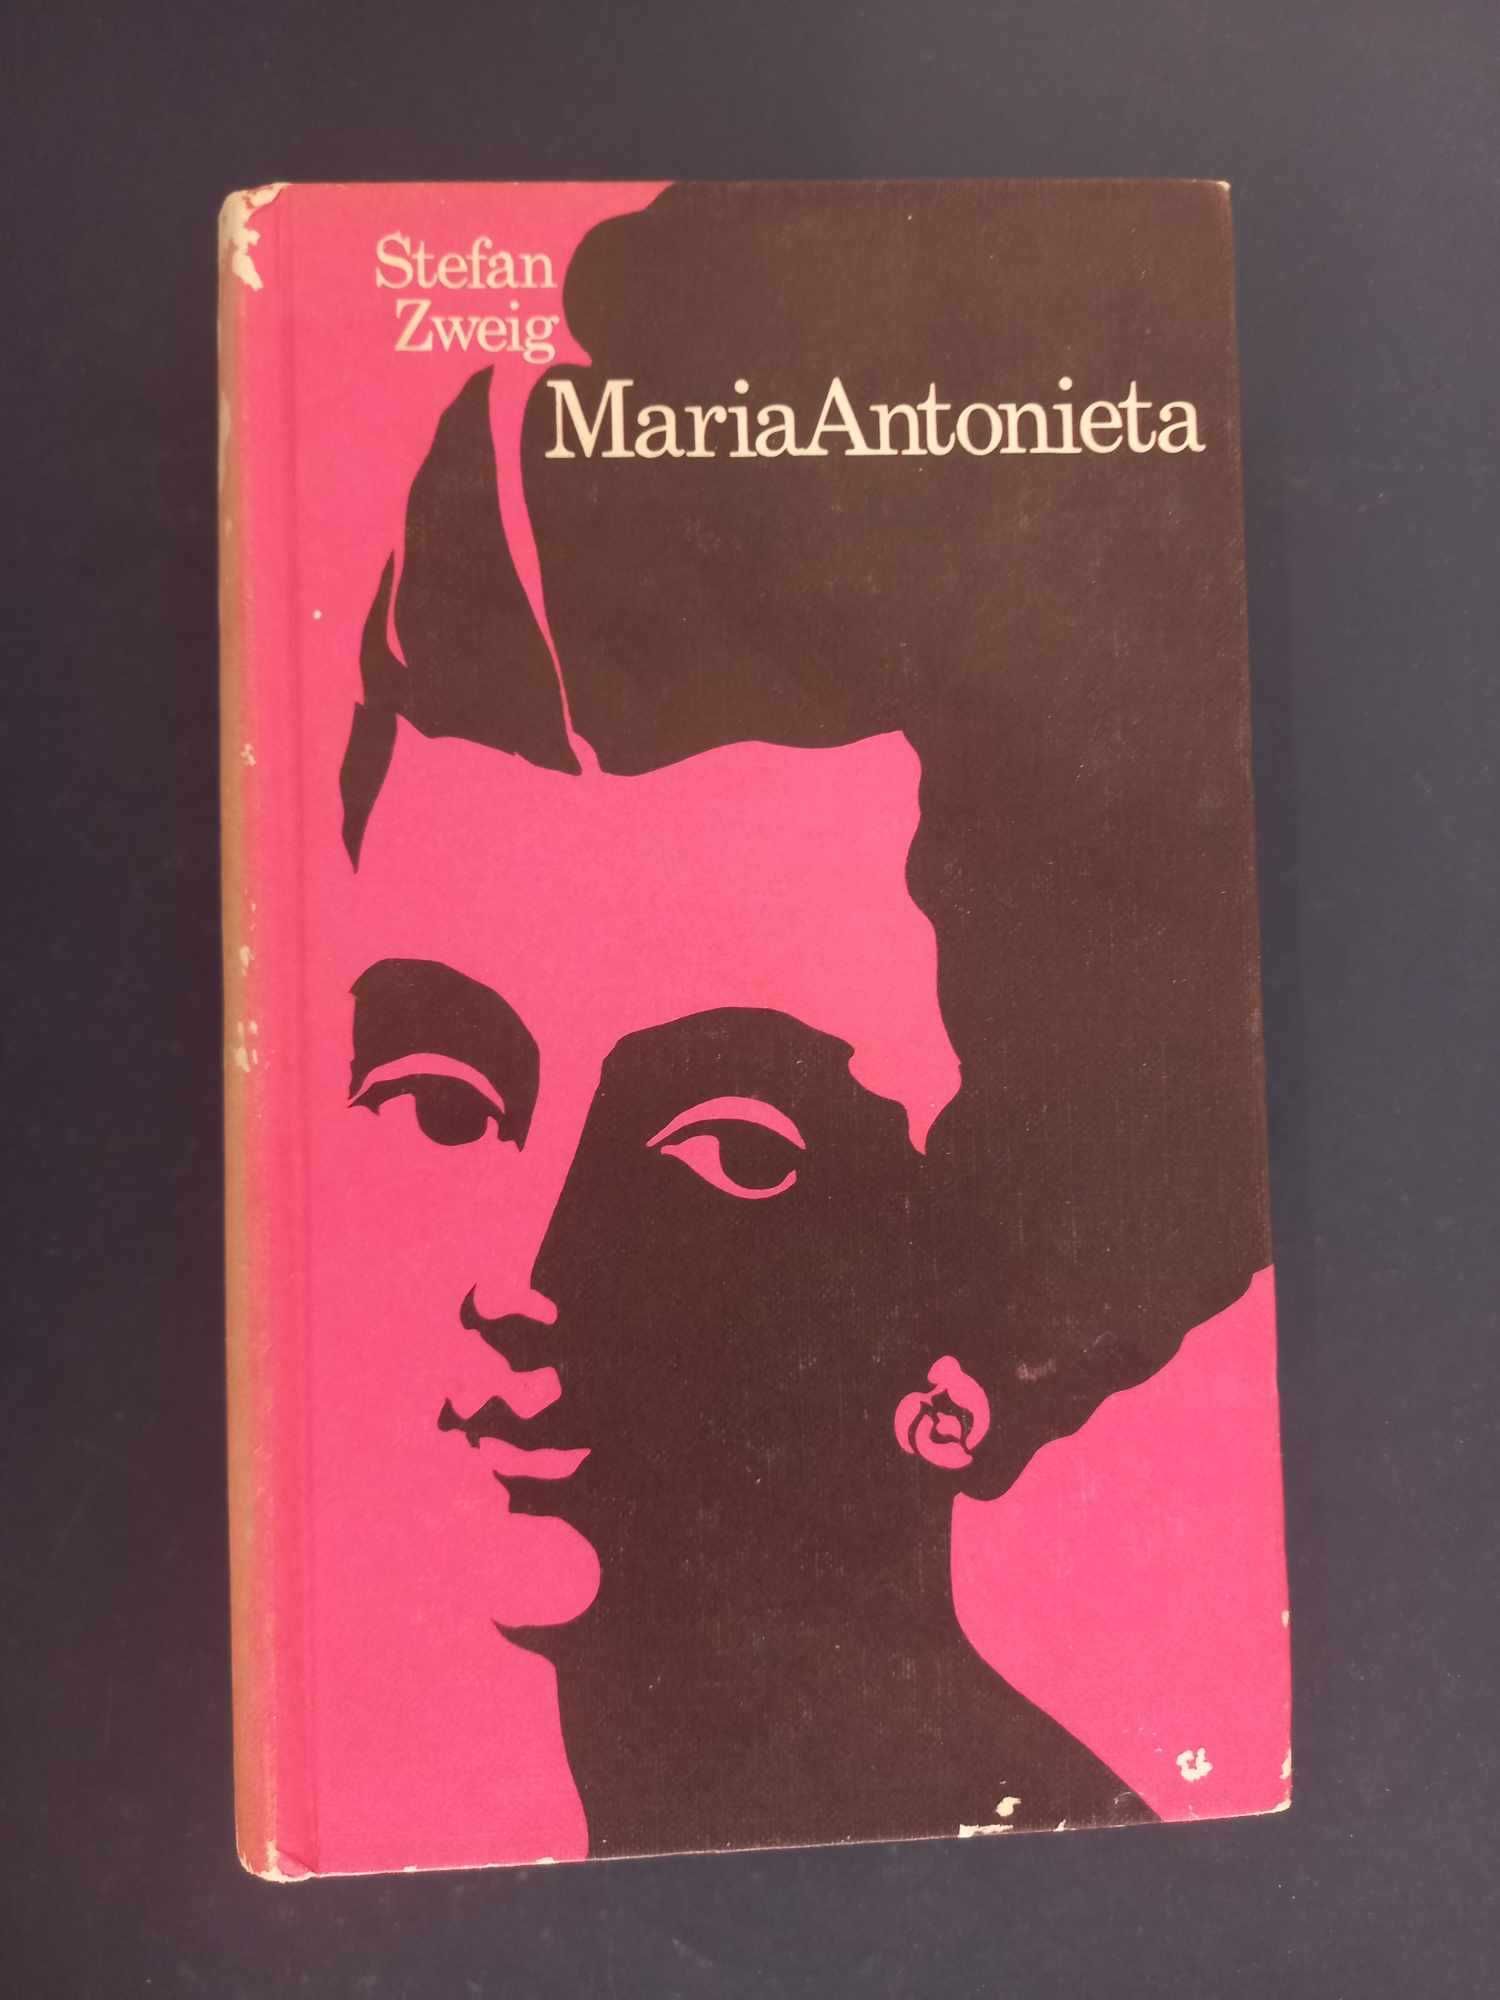 Livro Maria Antonieta (Portes Grátis)